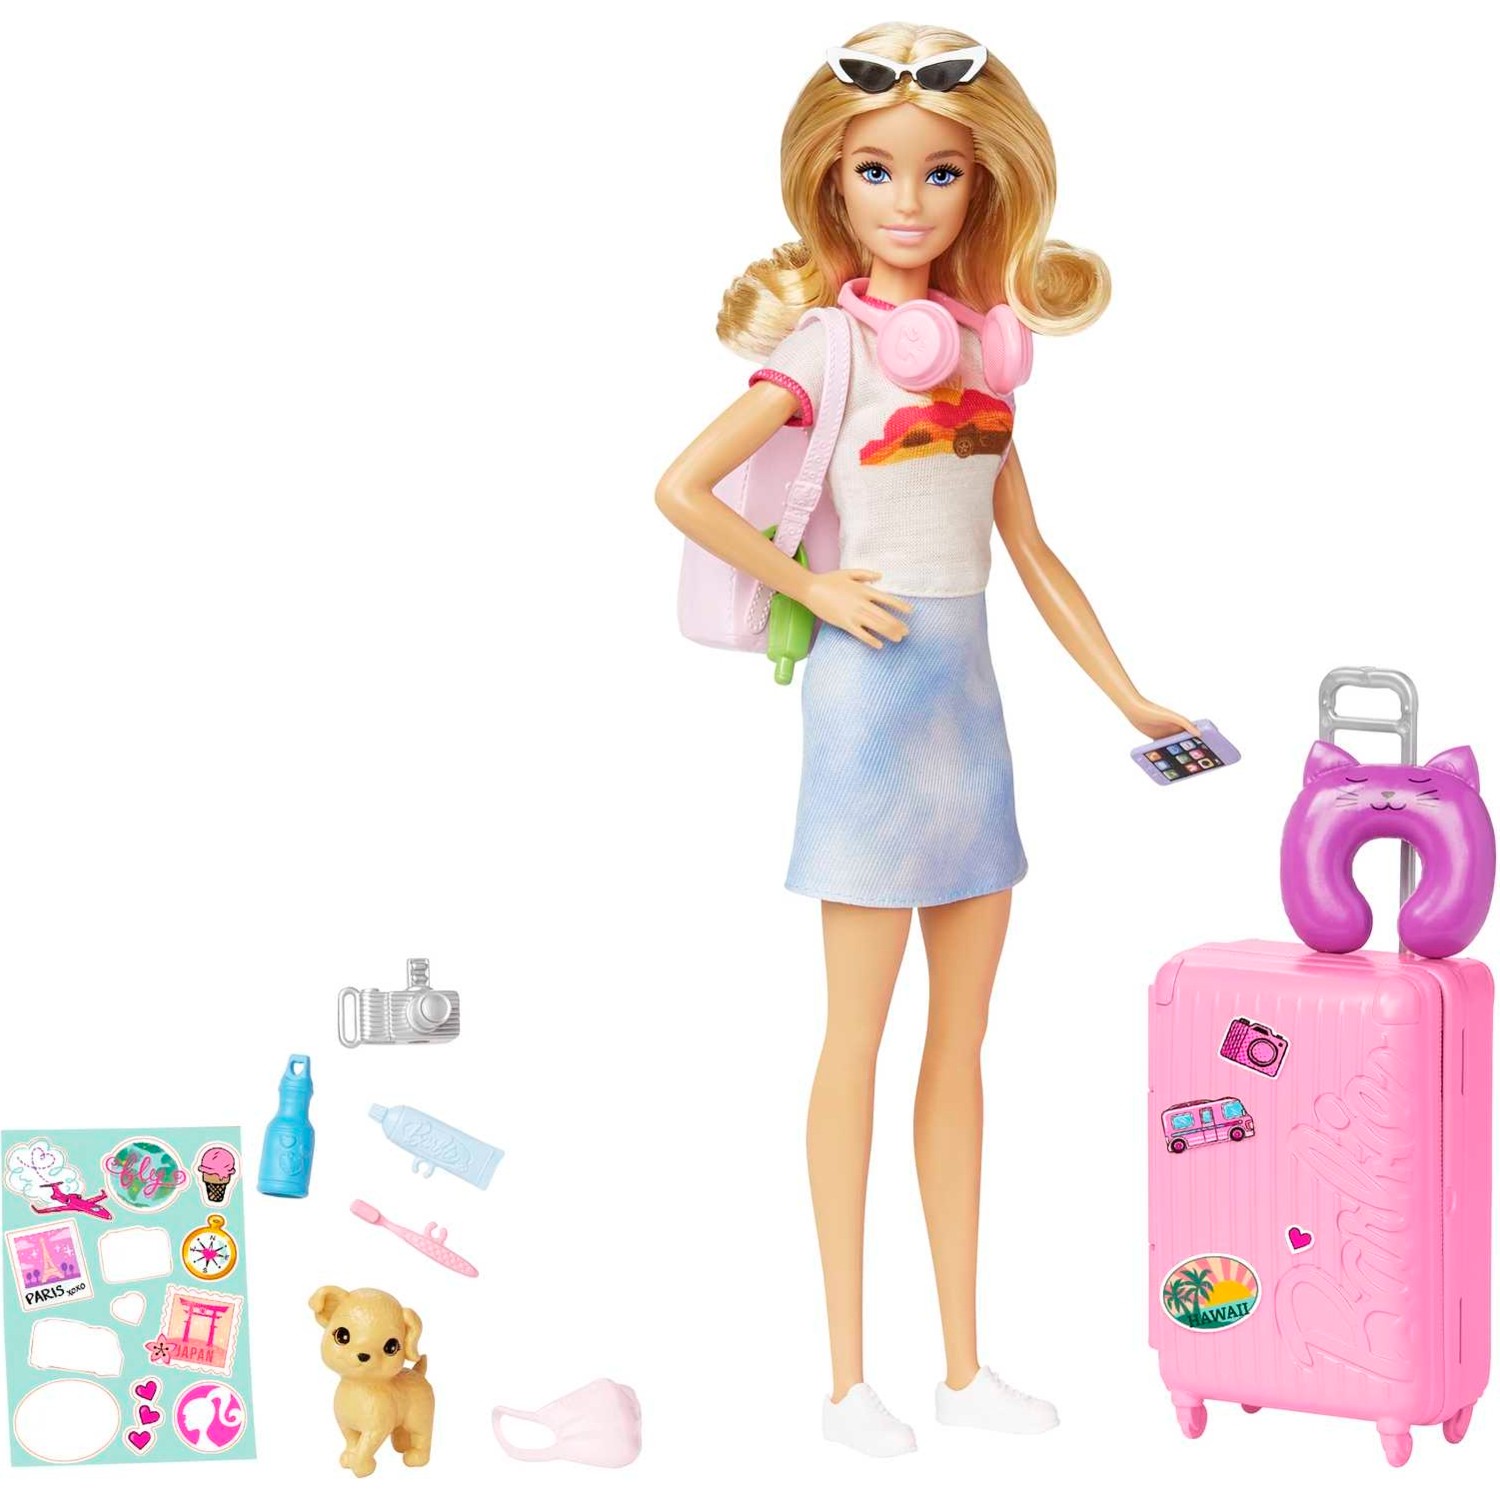 автомобиль barbie super adventure camper высотой 76 см с бассейном горкой и более 60 аксессуарами Кукла Barbie HJY18